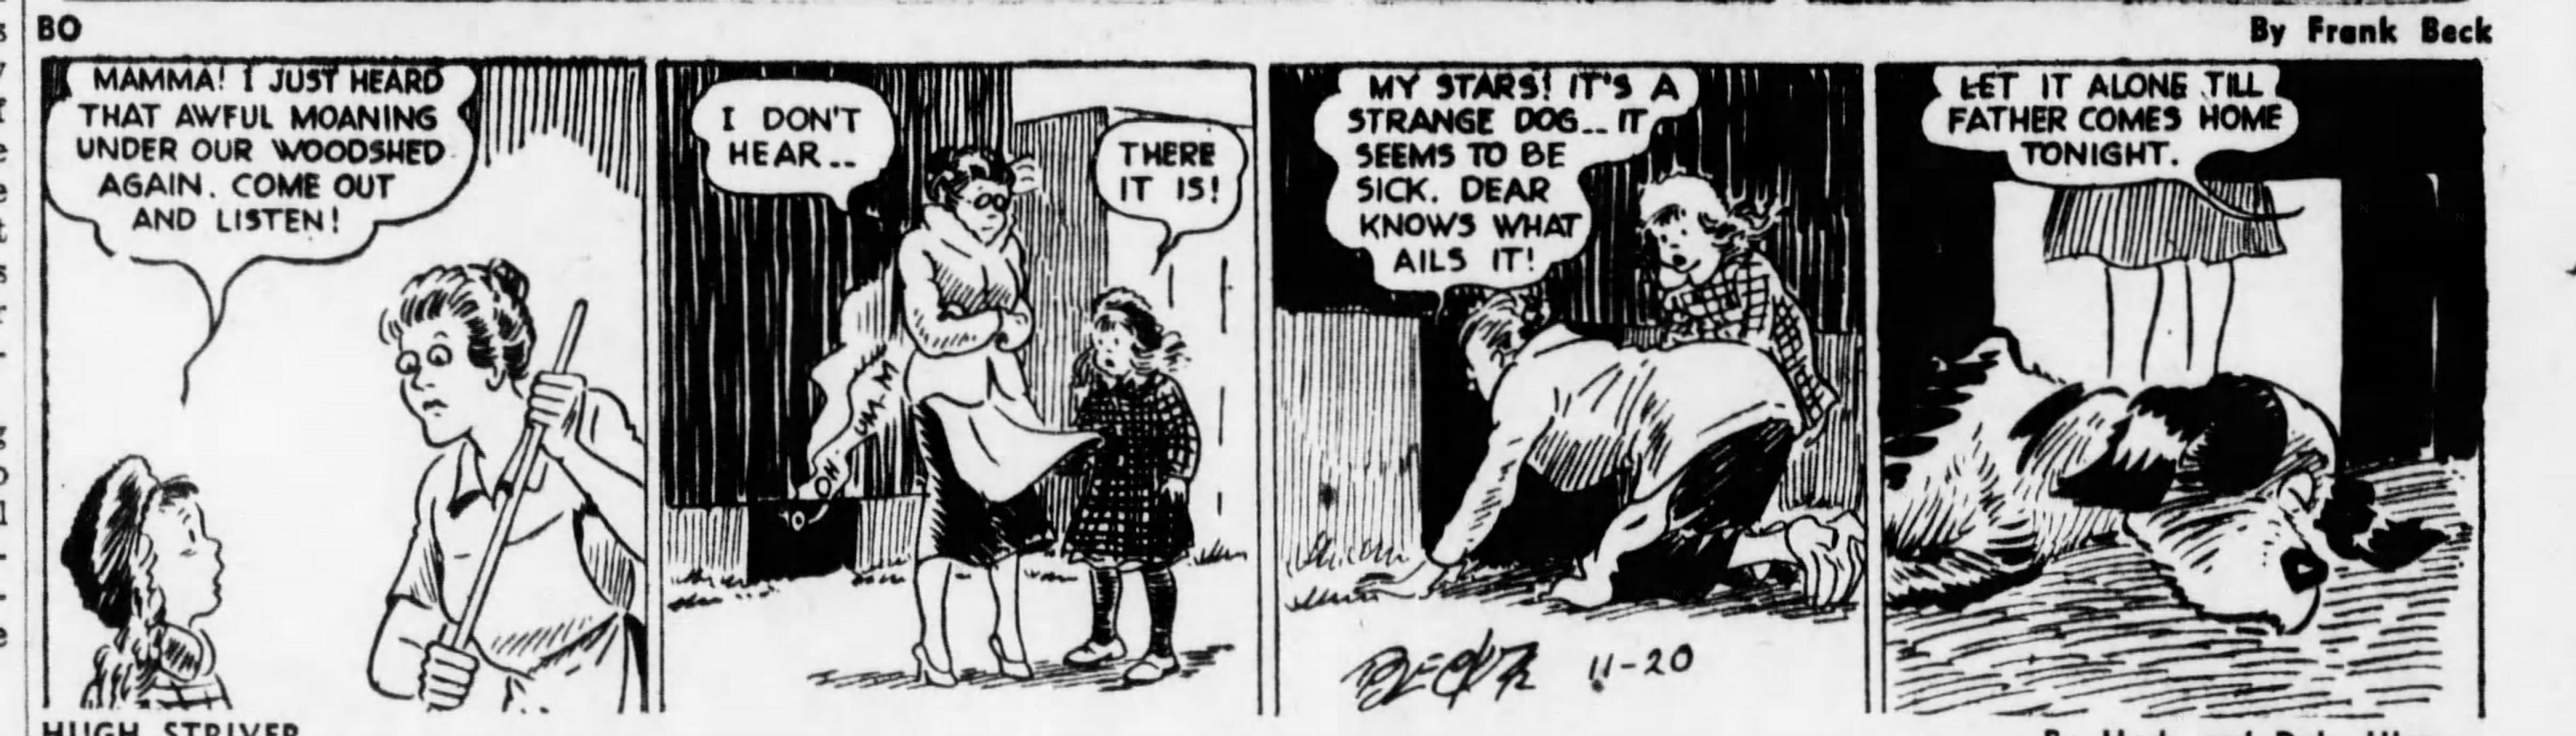 The_Brooklyn_Daily_Eagle_Fri__Nov_20__1942_(9).jpg